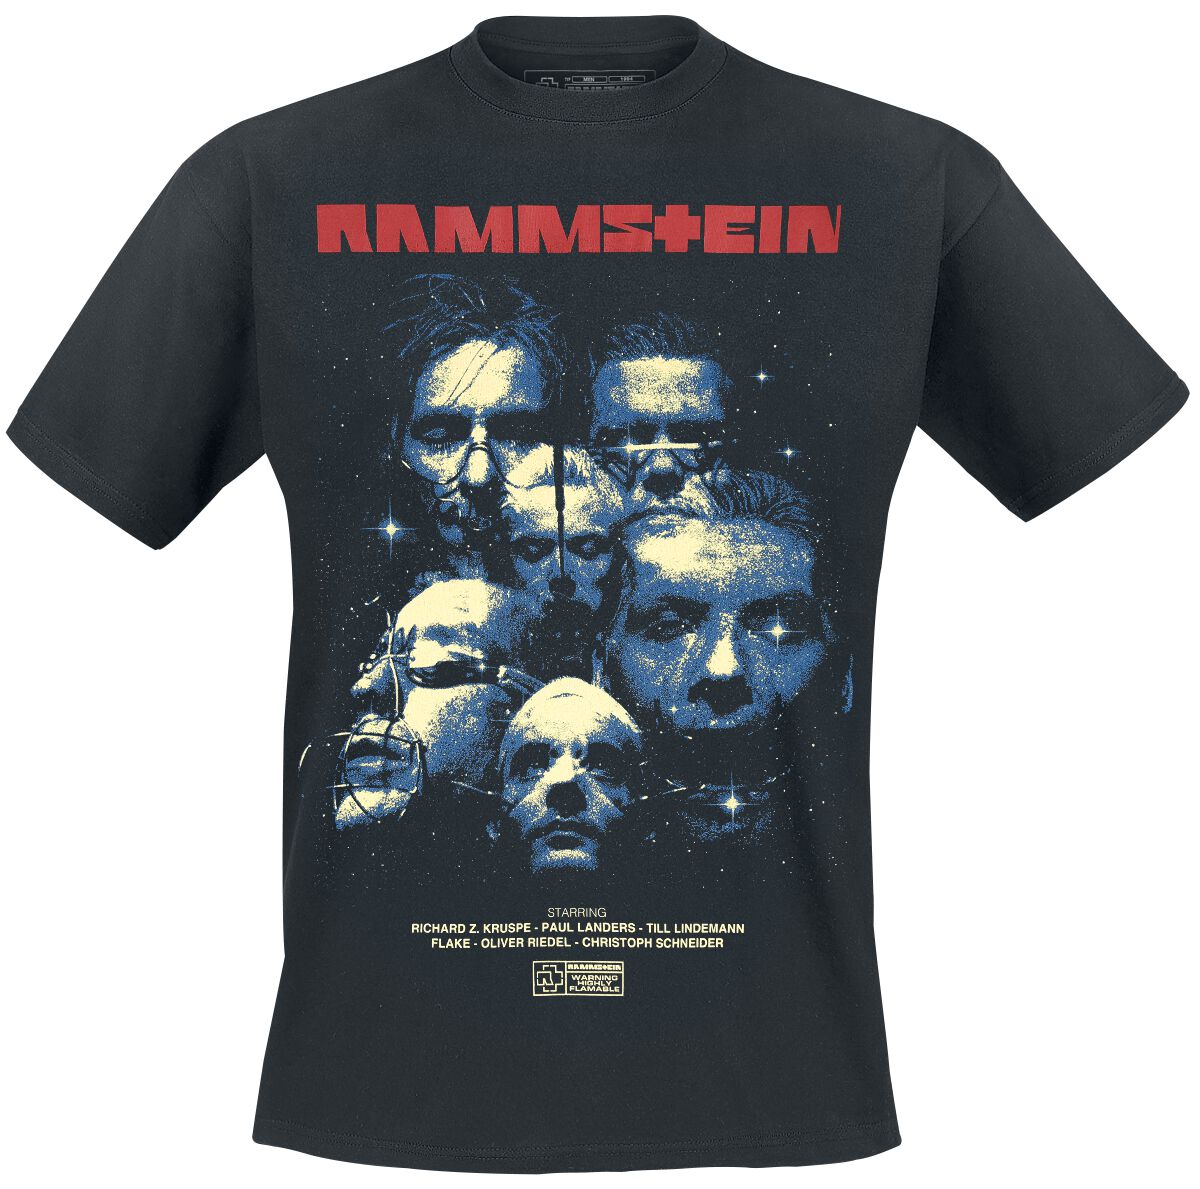 Rammstein T-Shirt - Sehnsucht Movie - XXL bis 3XL - für Männer - Größe XXL - schwarz  - Lizenziertes Merchandise!